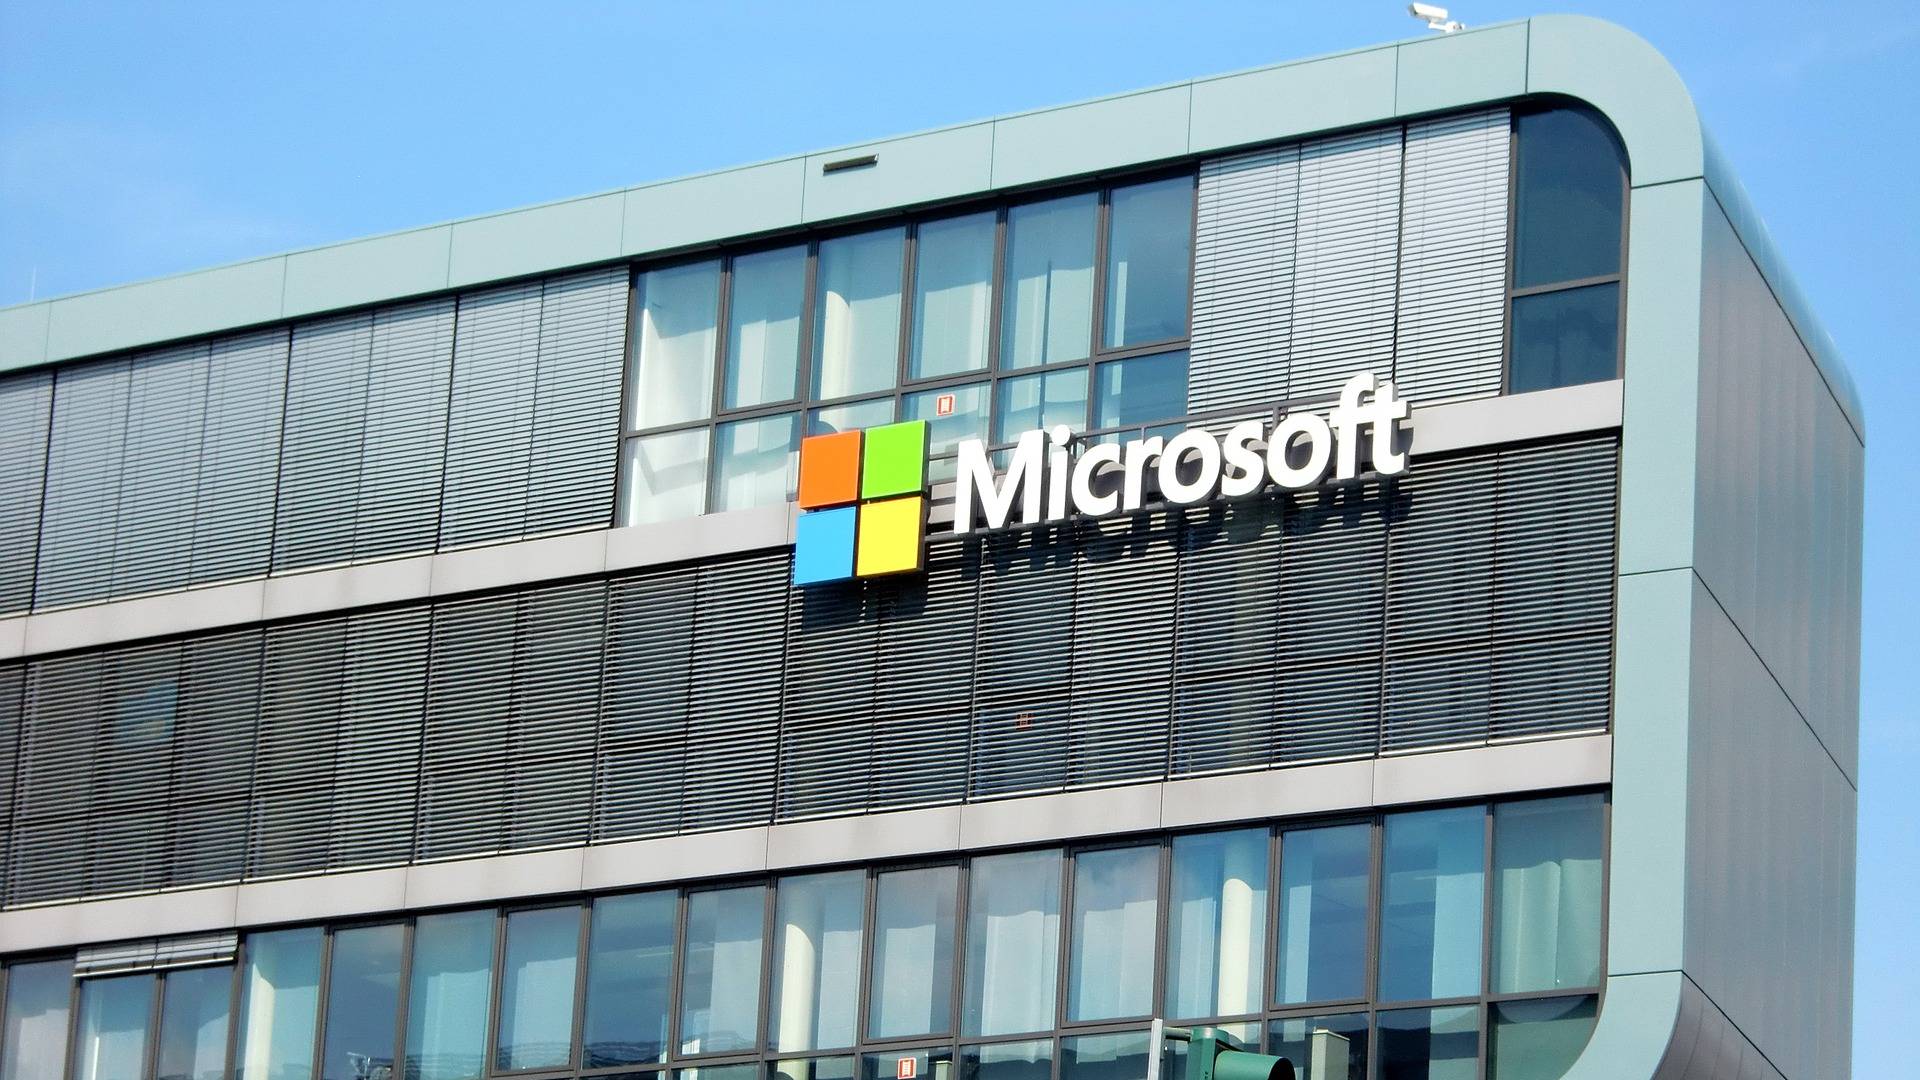 Centrum Microsoft GMAIL dla niezwykle niebezpiecznych ataków cybernetycznych